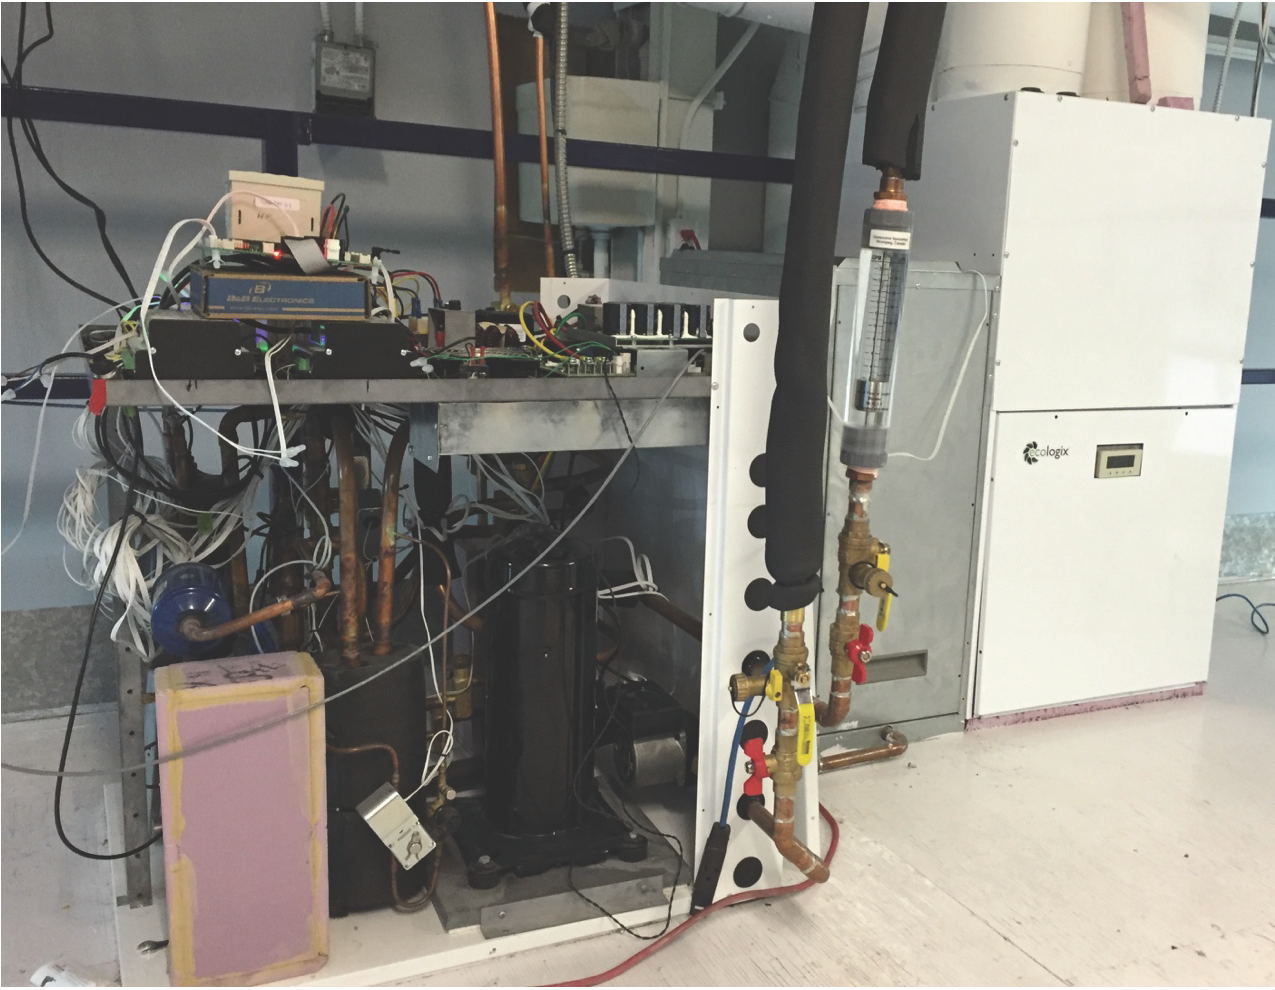 La photo présente l’intérieur du prototype de module de thermopompe intégrée de l’entreprise Ecologix raccordé à divers instruments à des fins d’essais en laboratoire et en arrière-plan, son appa